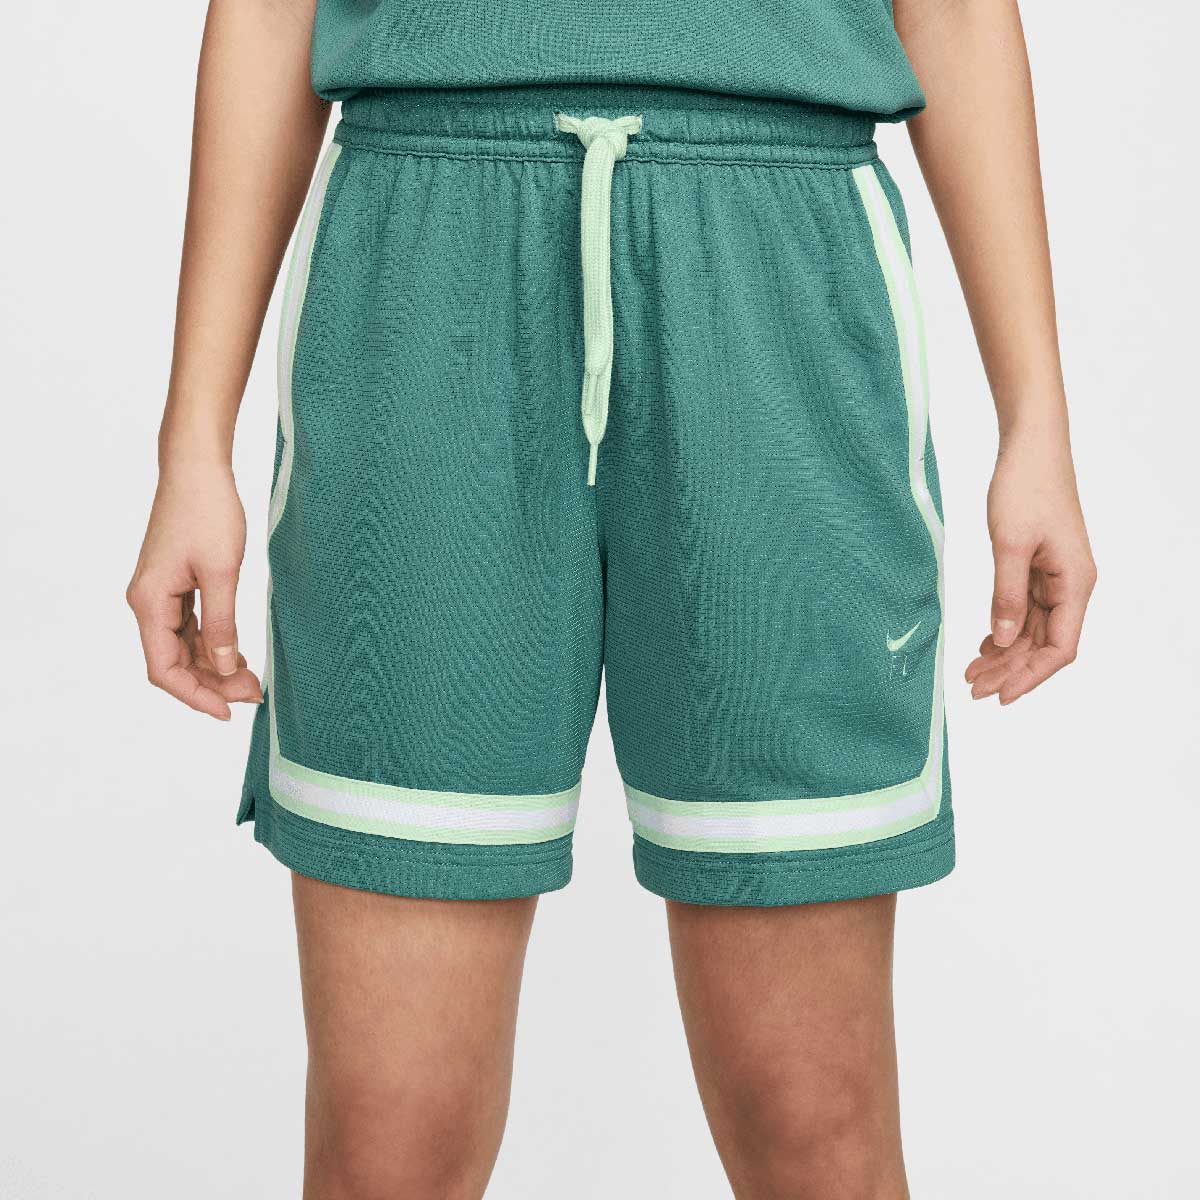 Nike Crossover Fly Shorts Move 2 Zero Womens, Bicoastal/(vapor Green) S